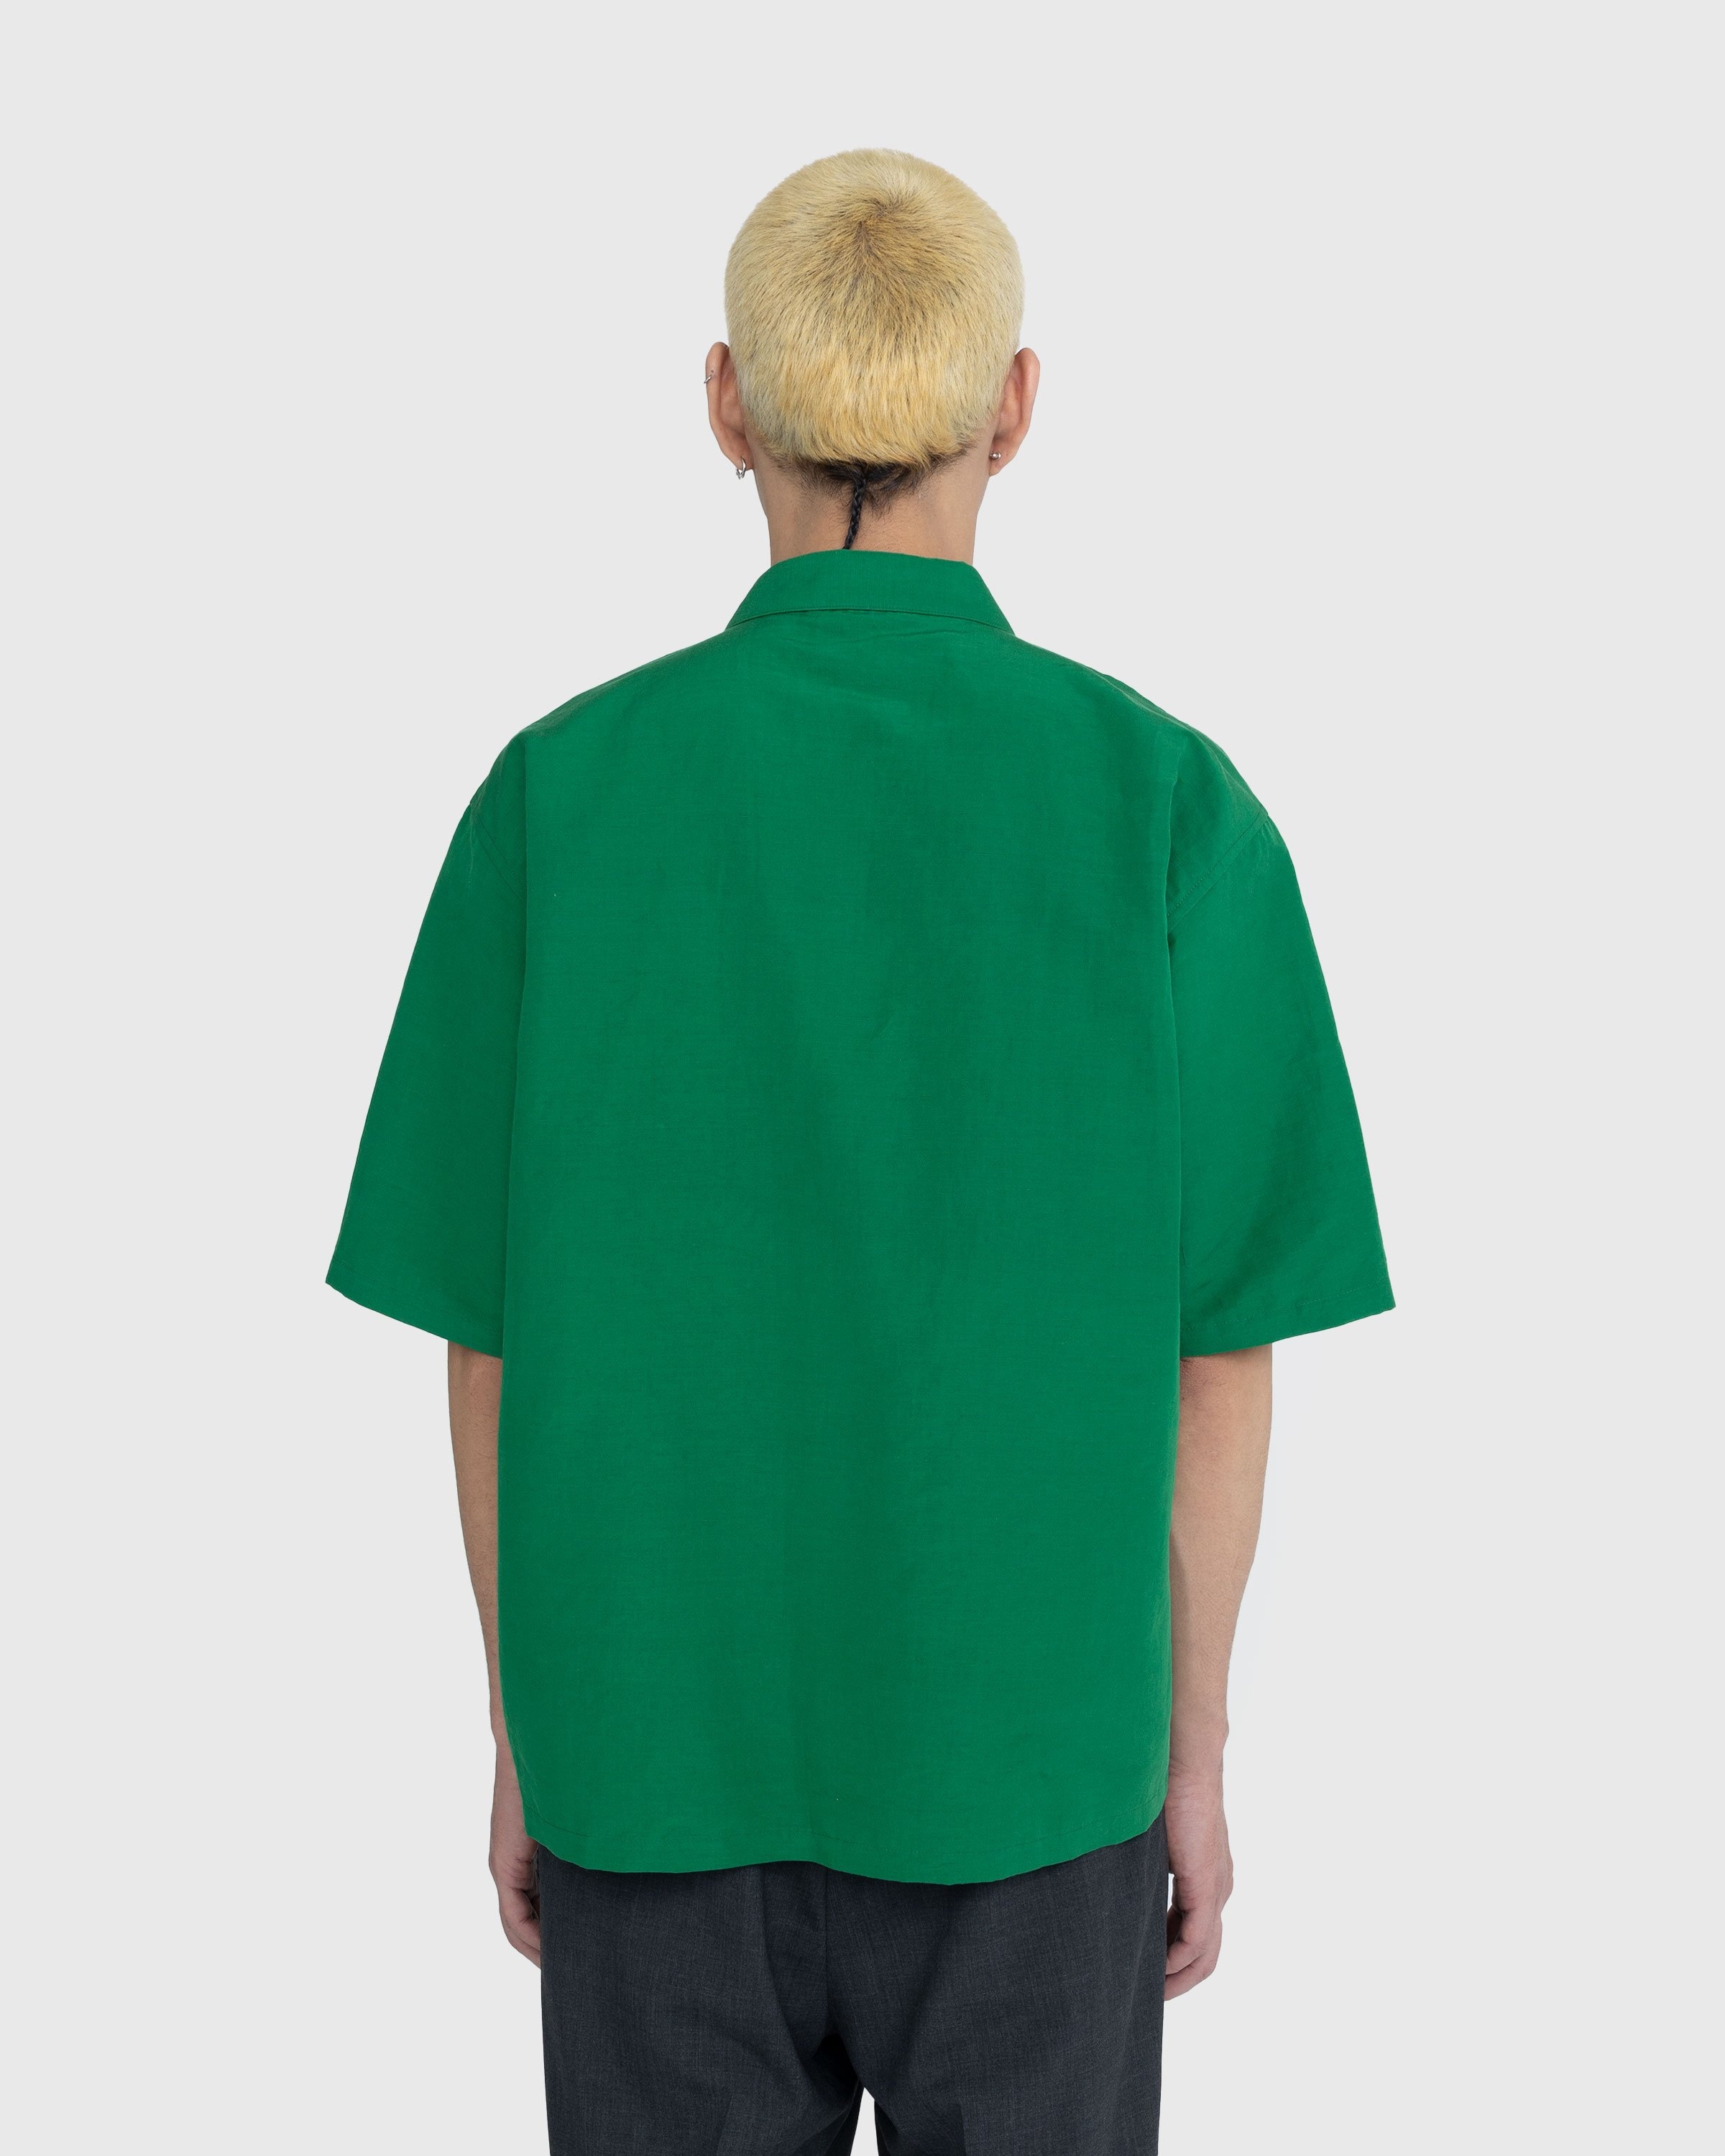 Auralee – High Density Finx Linen Weather Shirt Green - Shirts - Green - Image 3